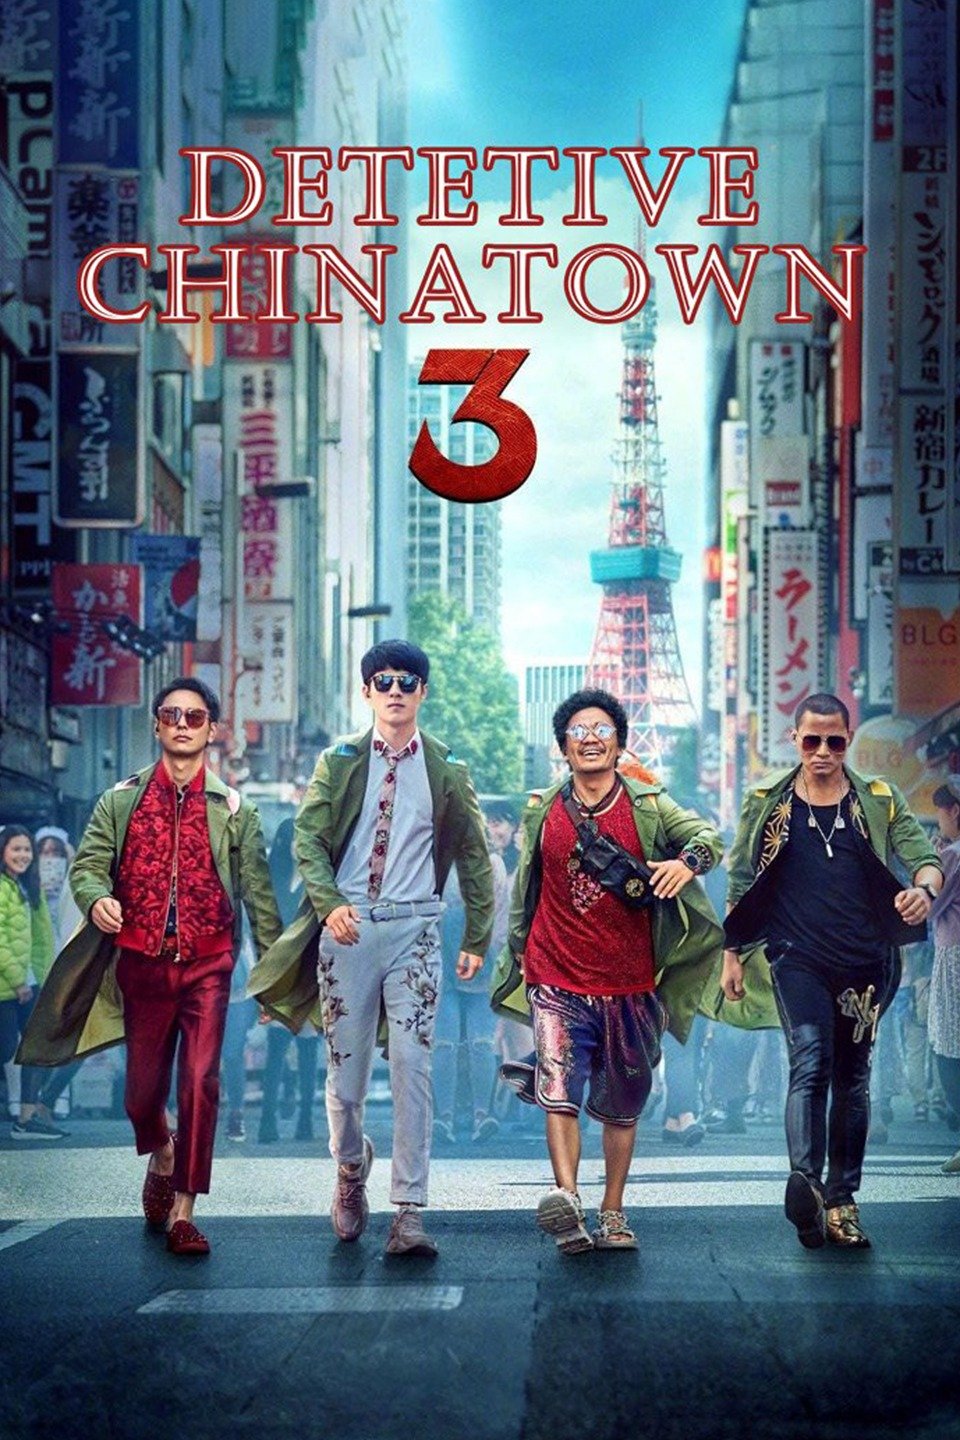 Detetive Chinatown 3 Online | Claro tv+